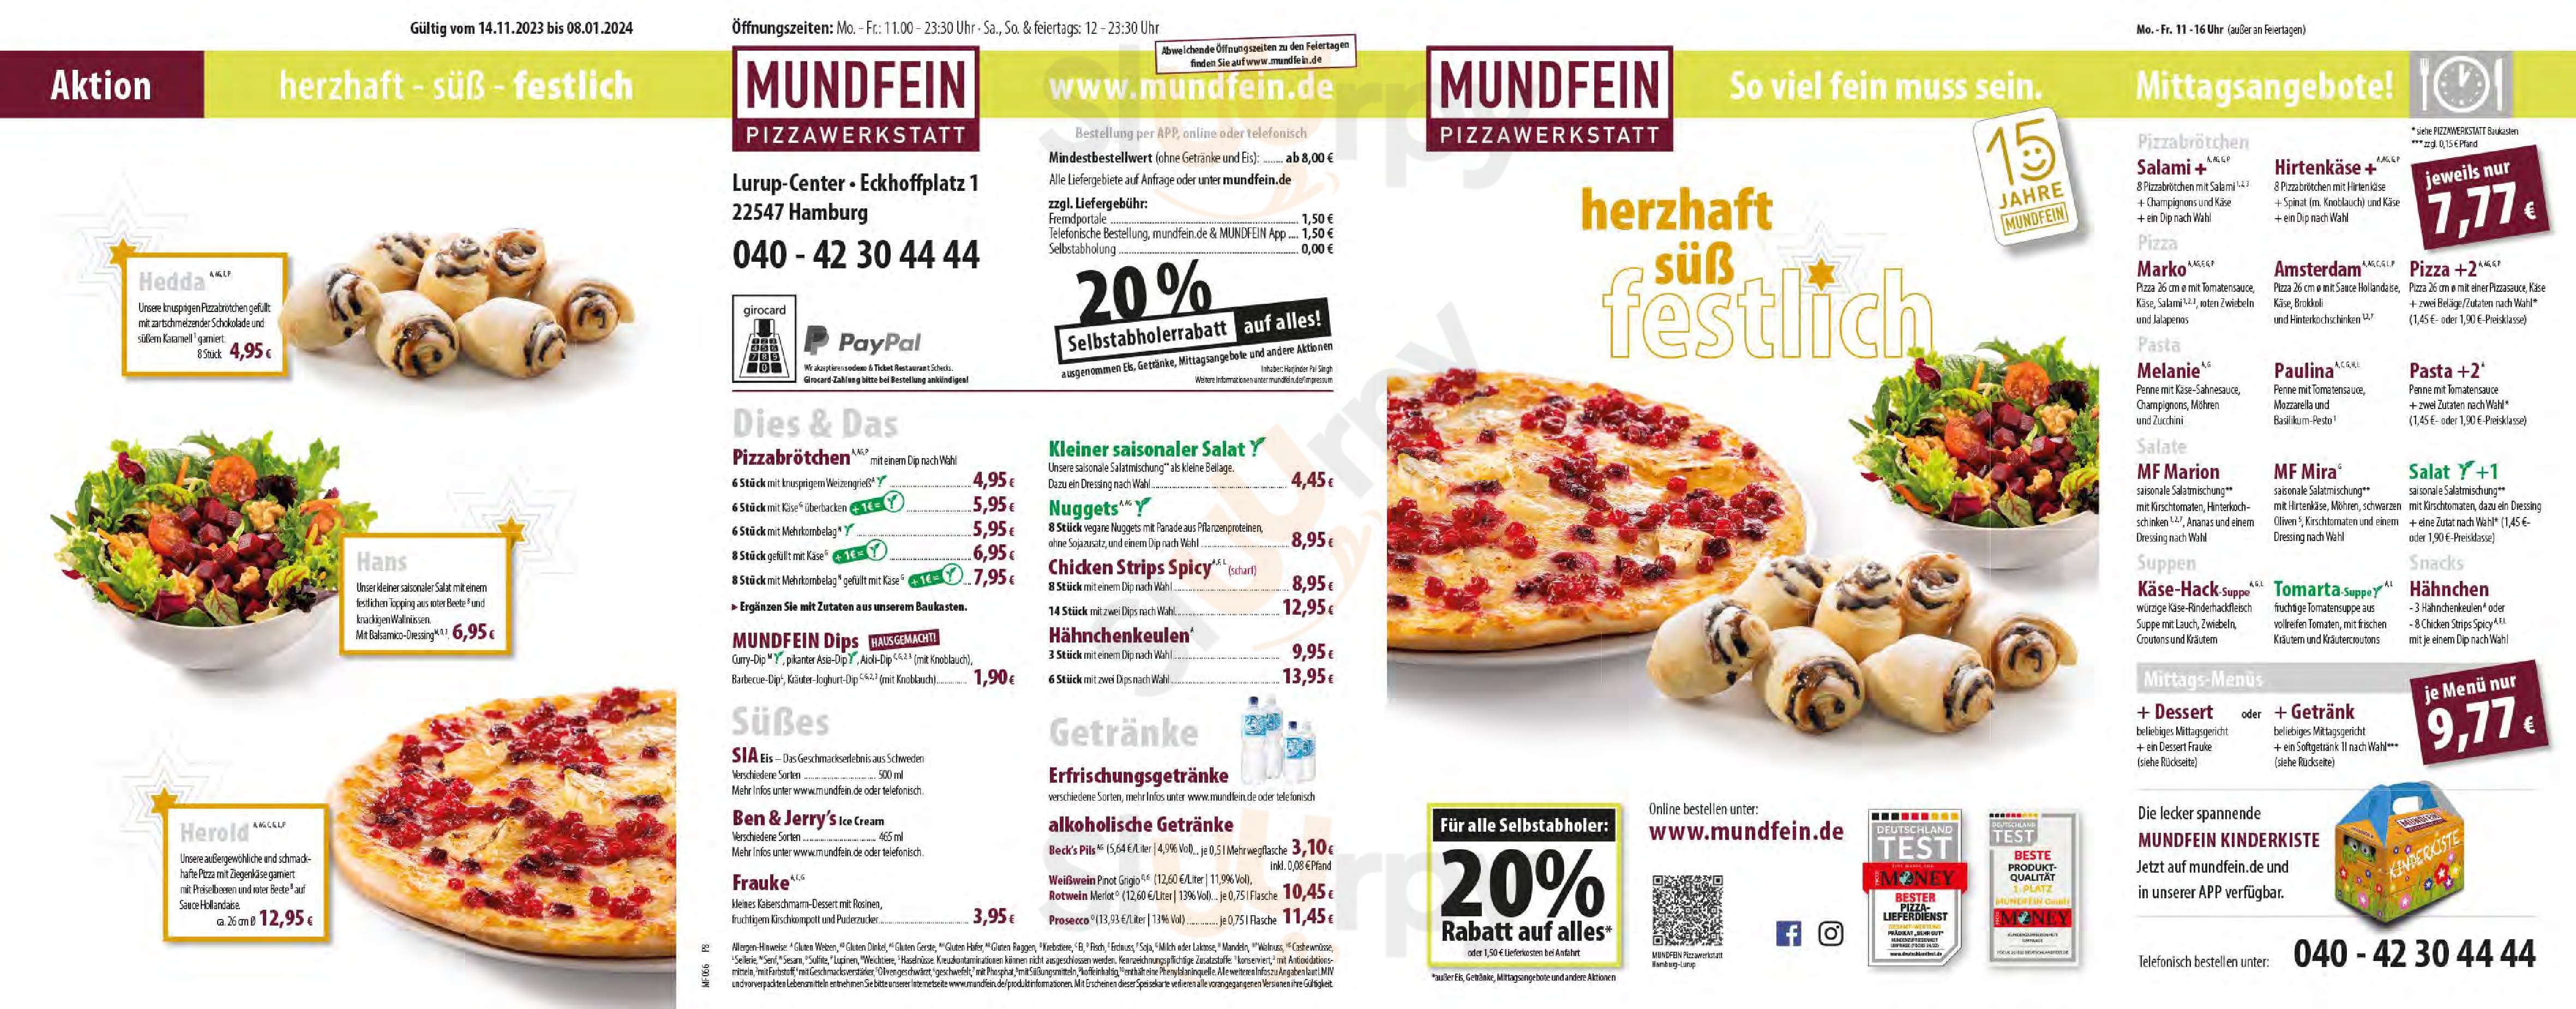 Mundfein Pizzawerkstatt Hamburg-lurup Hamburg Menu - 1